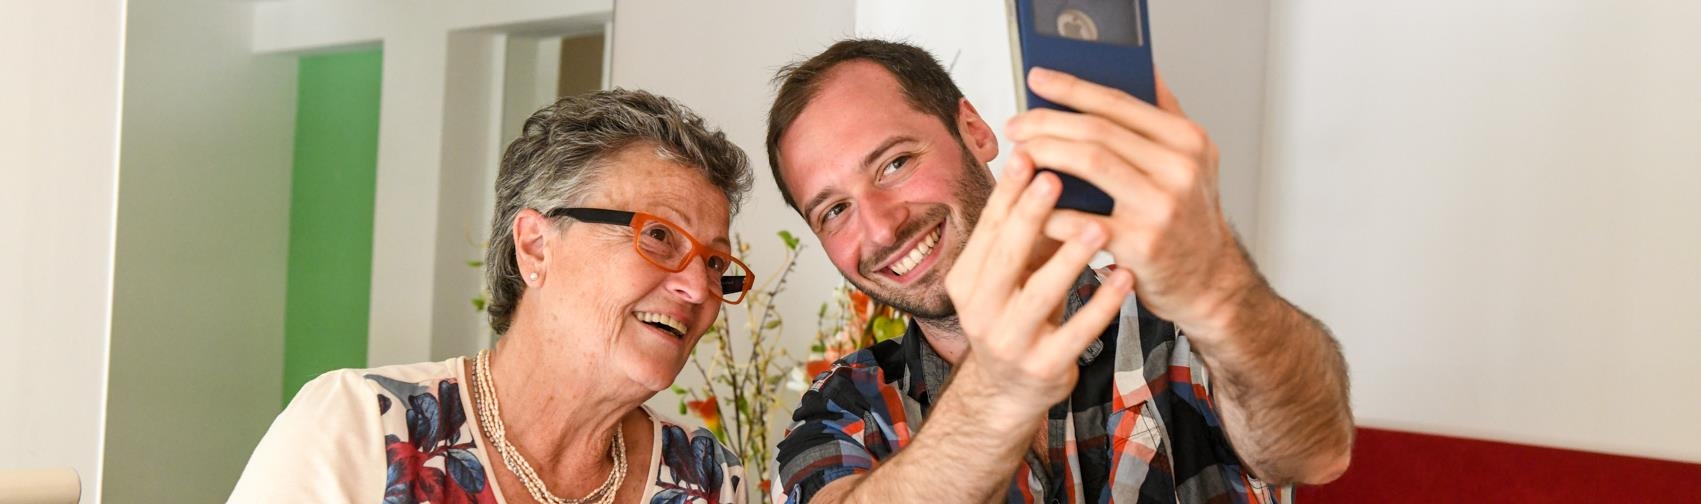 Ein junger Mann und eine ältere Frau machen zusammen ein Selfie